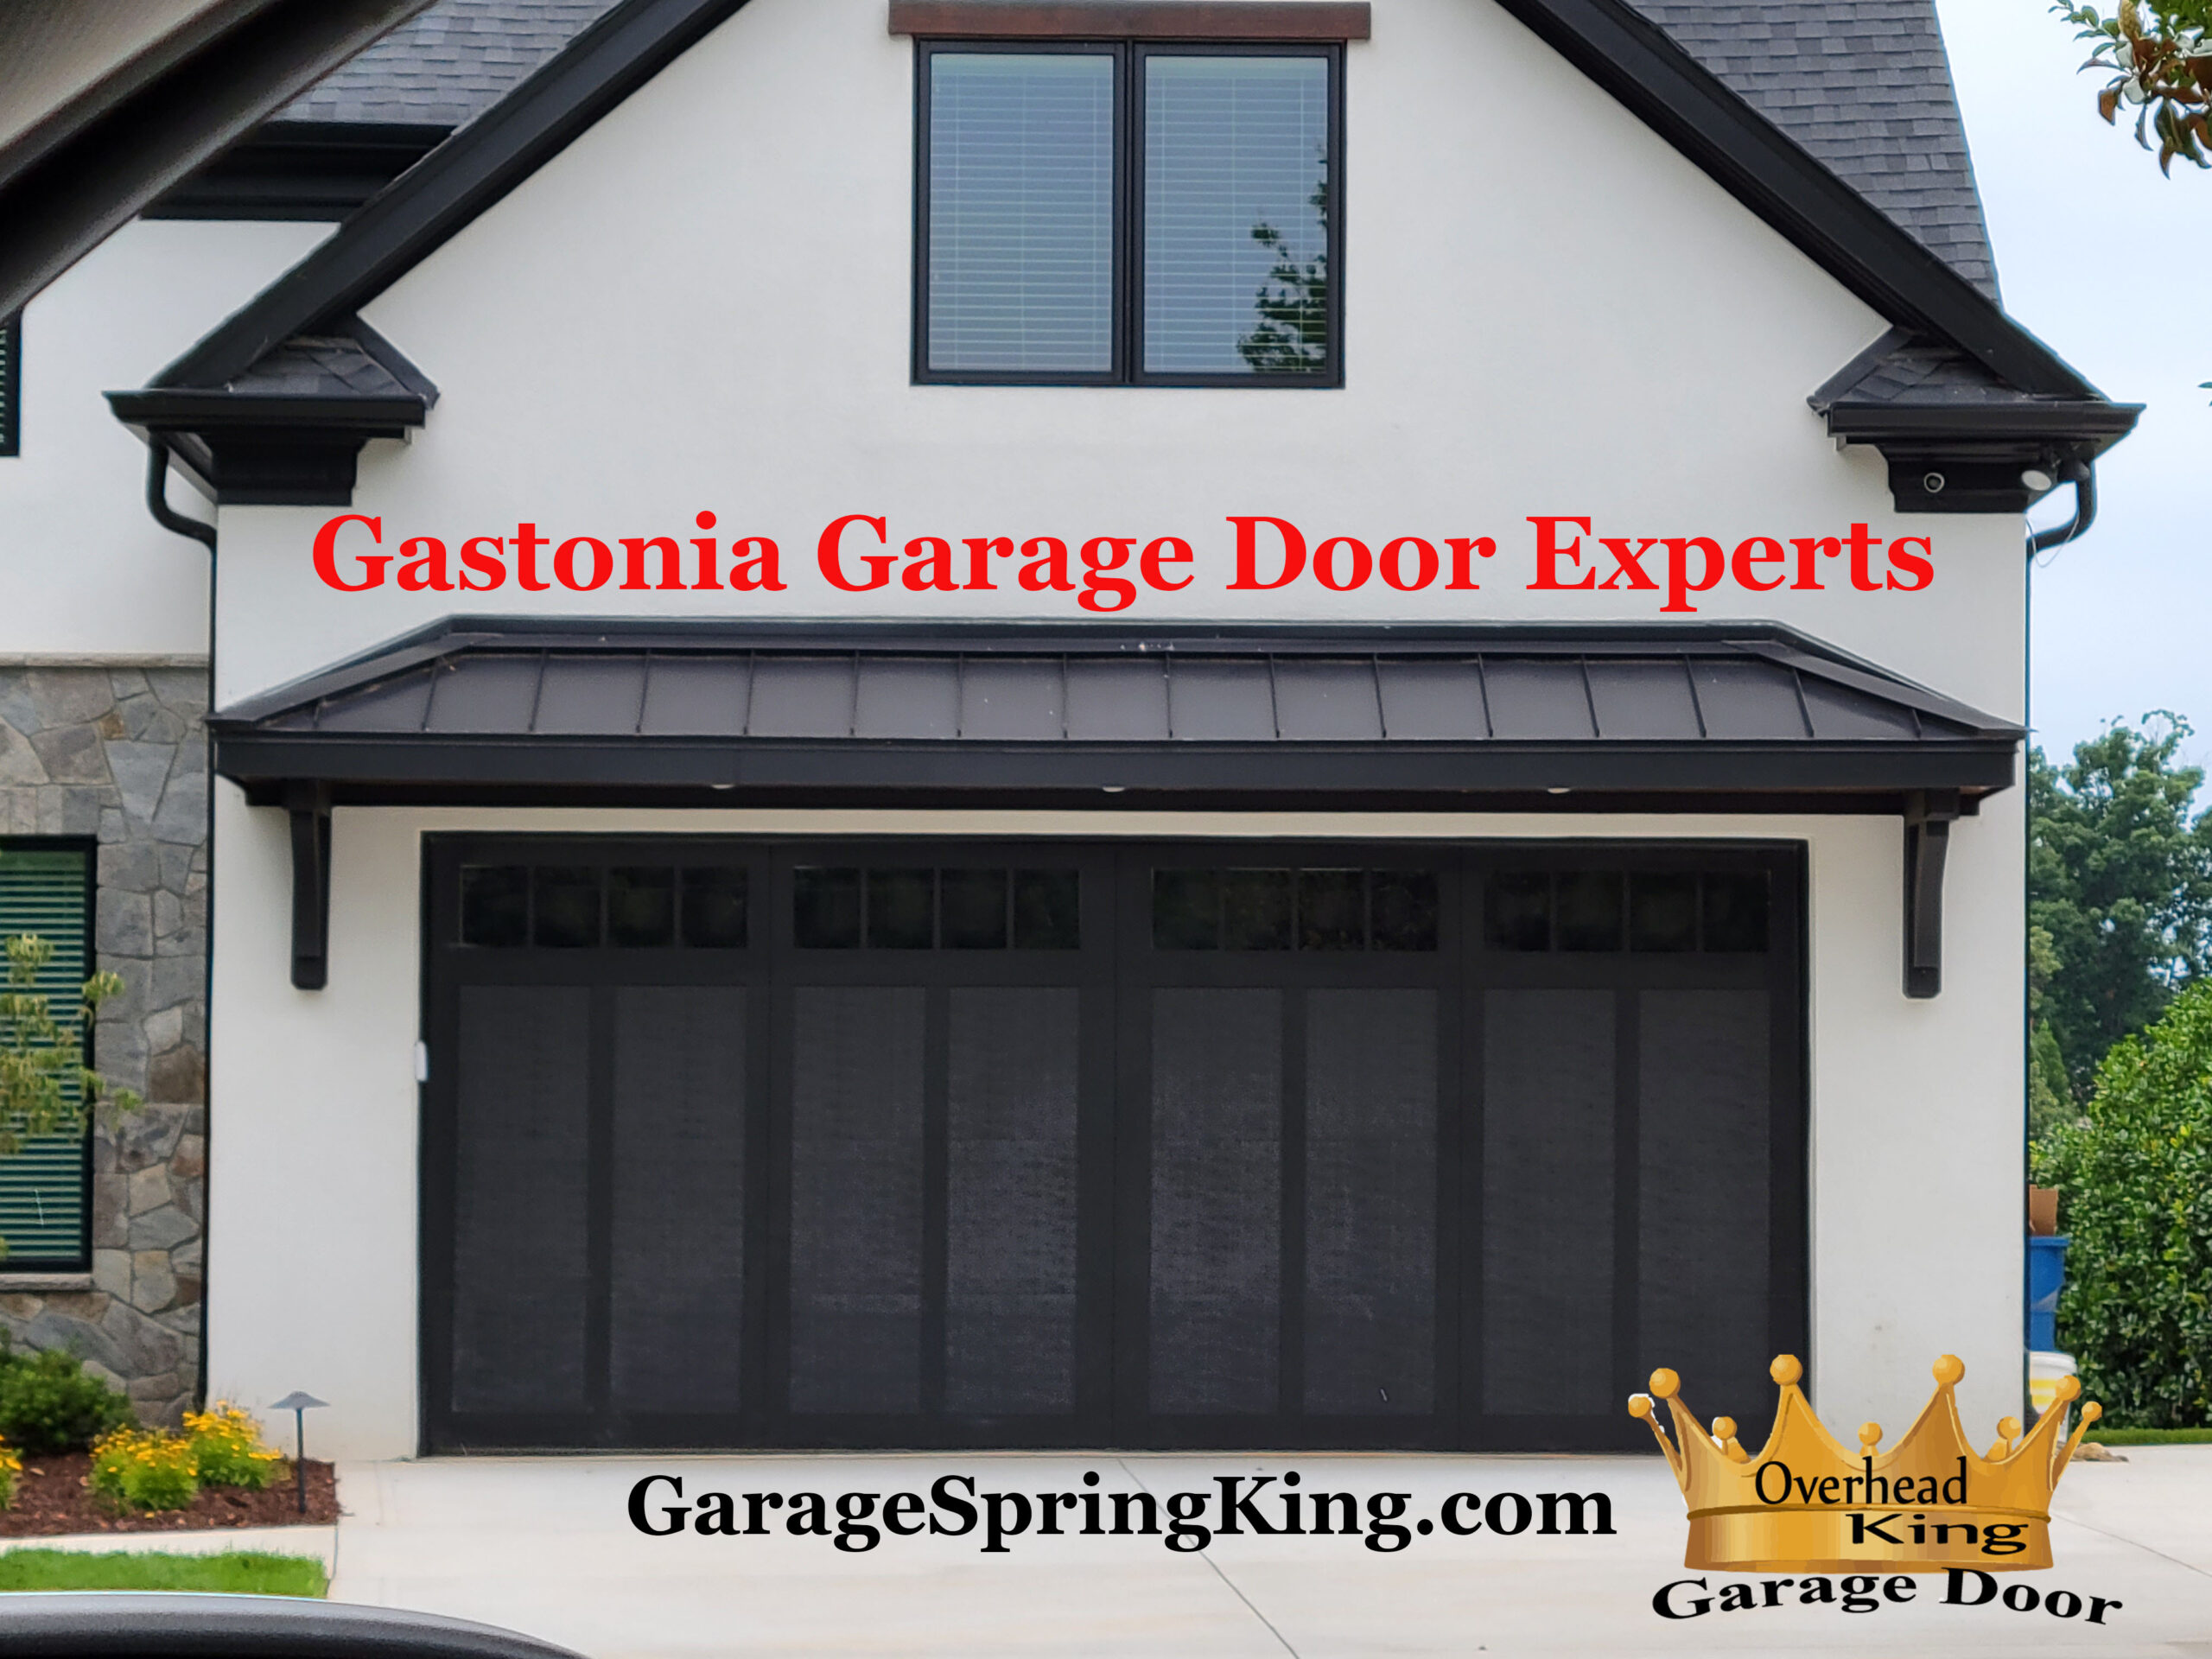 Gastonia Garage Door Experts